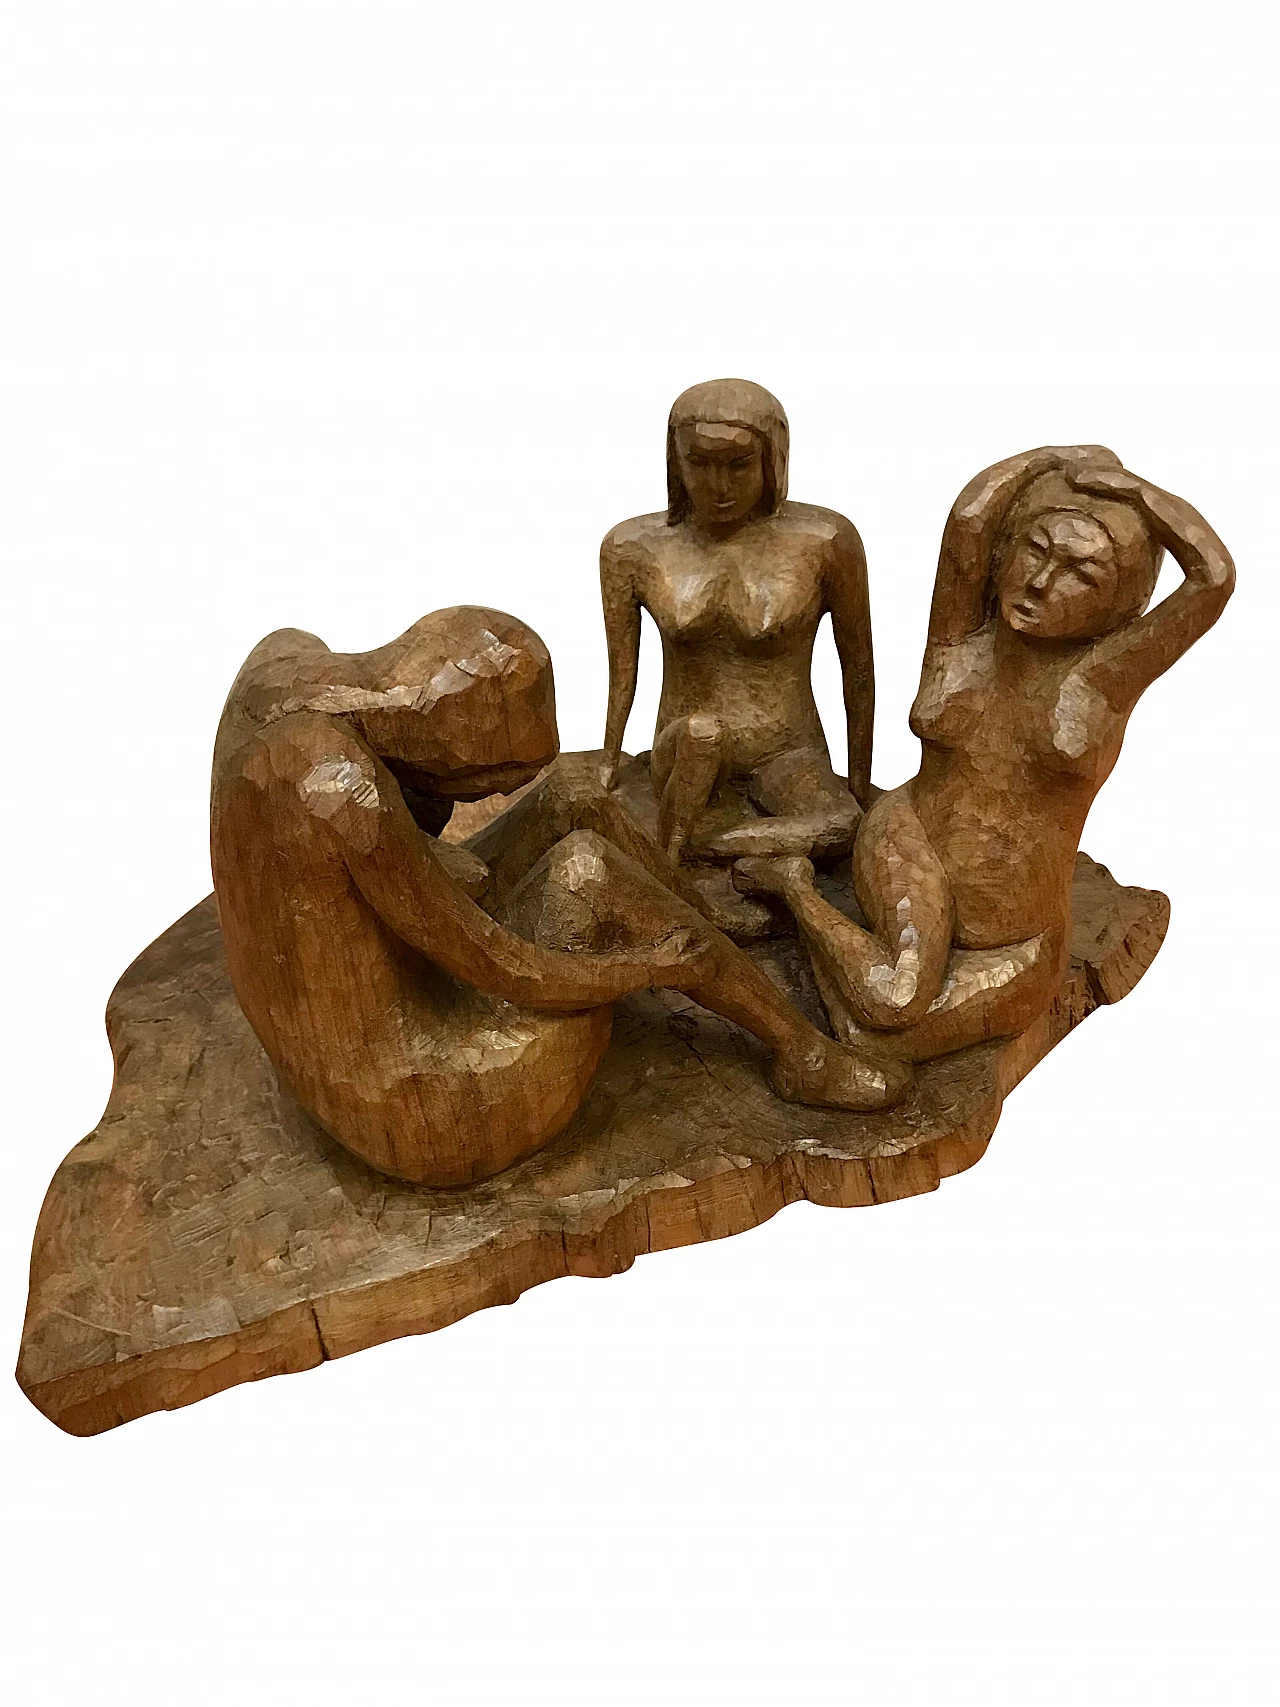 Luigi Sala, Tre donne nude, scultura in legno, Seregno 1997 1258576